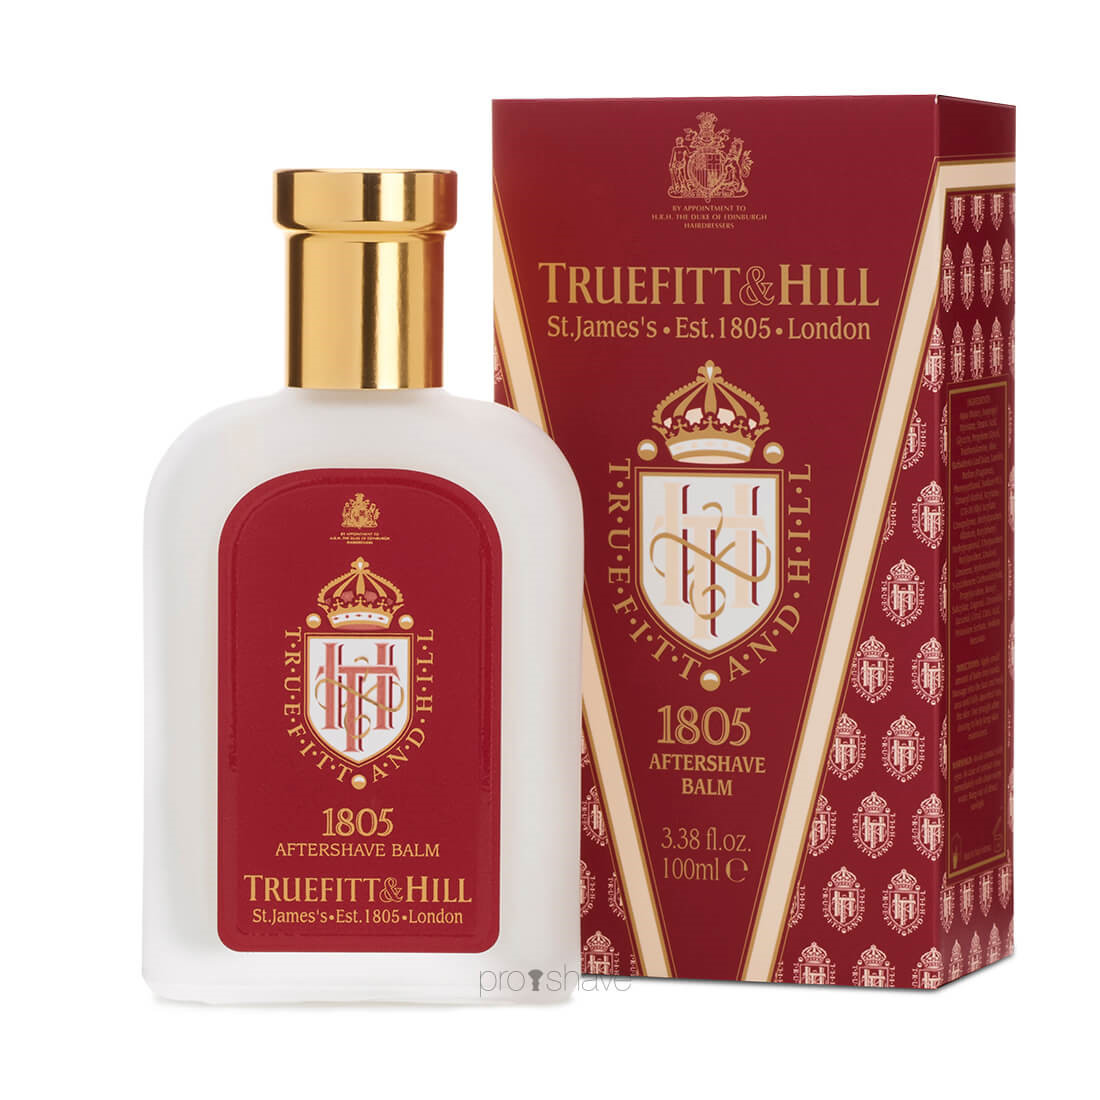 Truefitt & Hill Aftershave Balm, 1805, 100 ml.